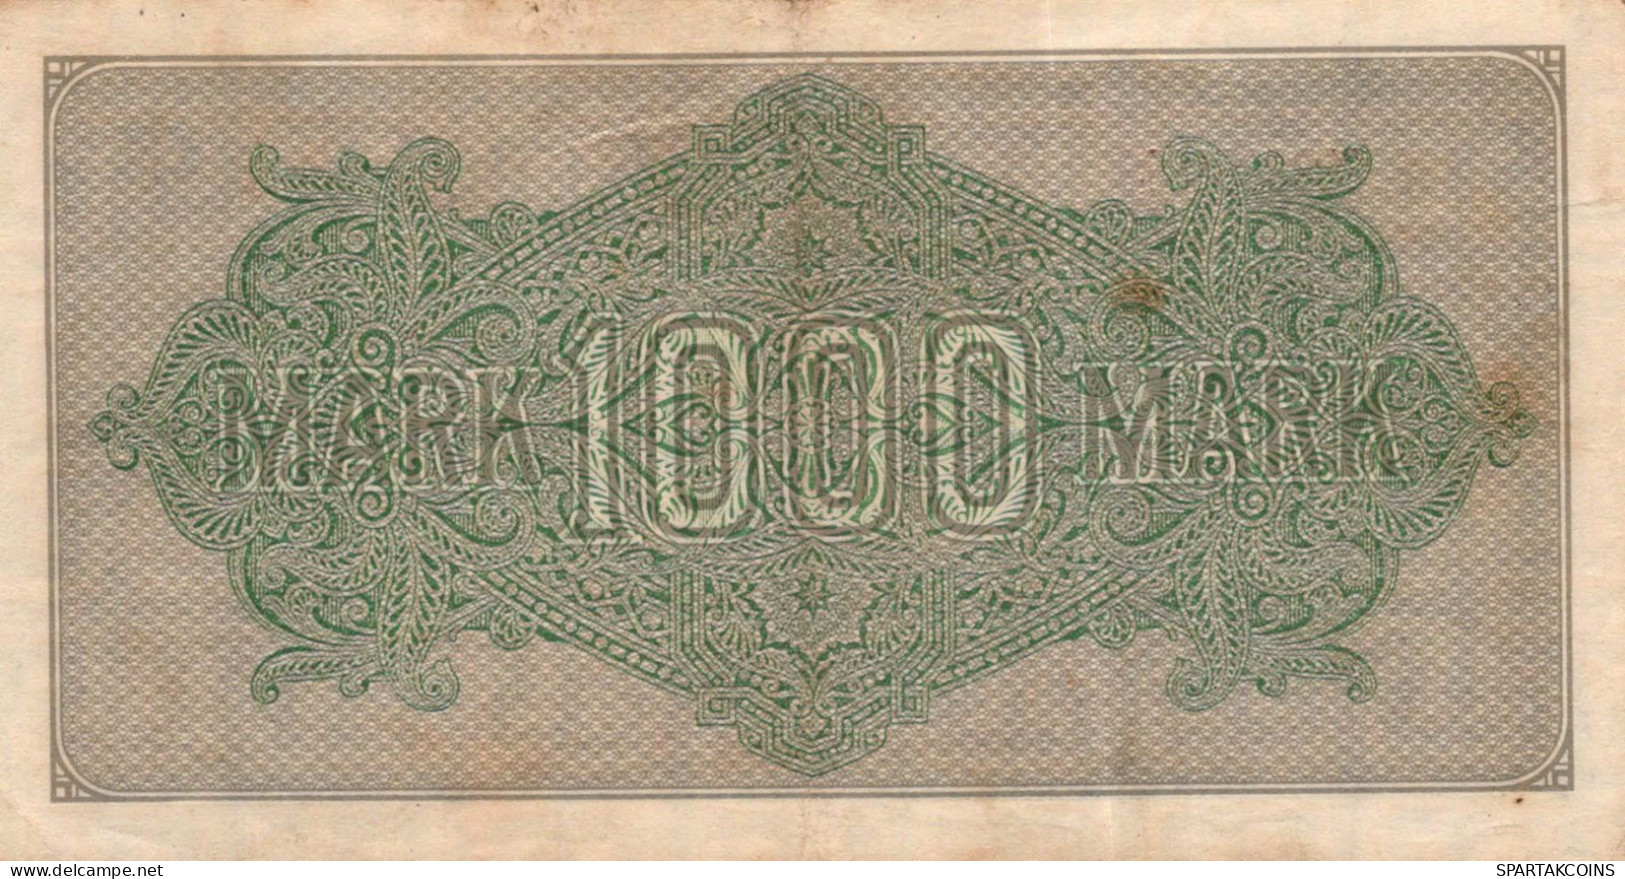 1000 MARK 1922 Stadt BERLIN DEUTSCHLAND Papiergeld Banknote #PL392 - Lokale Ausgaben